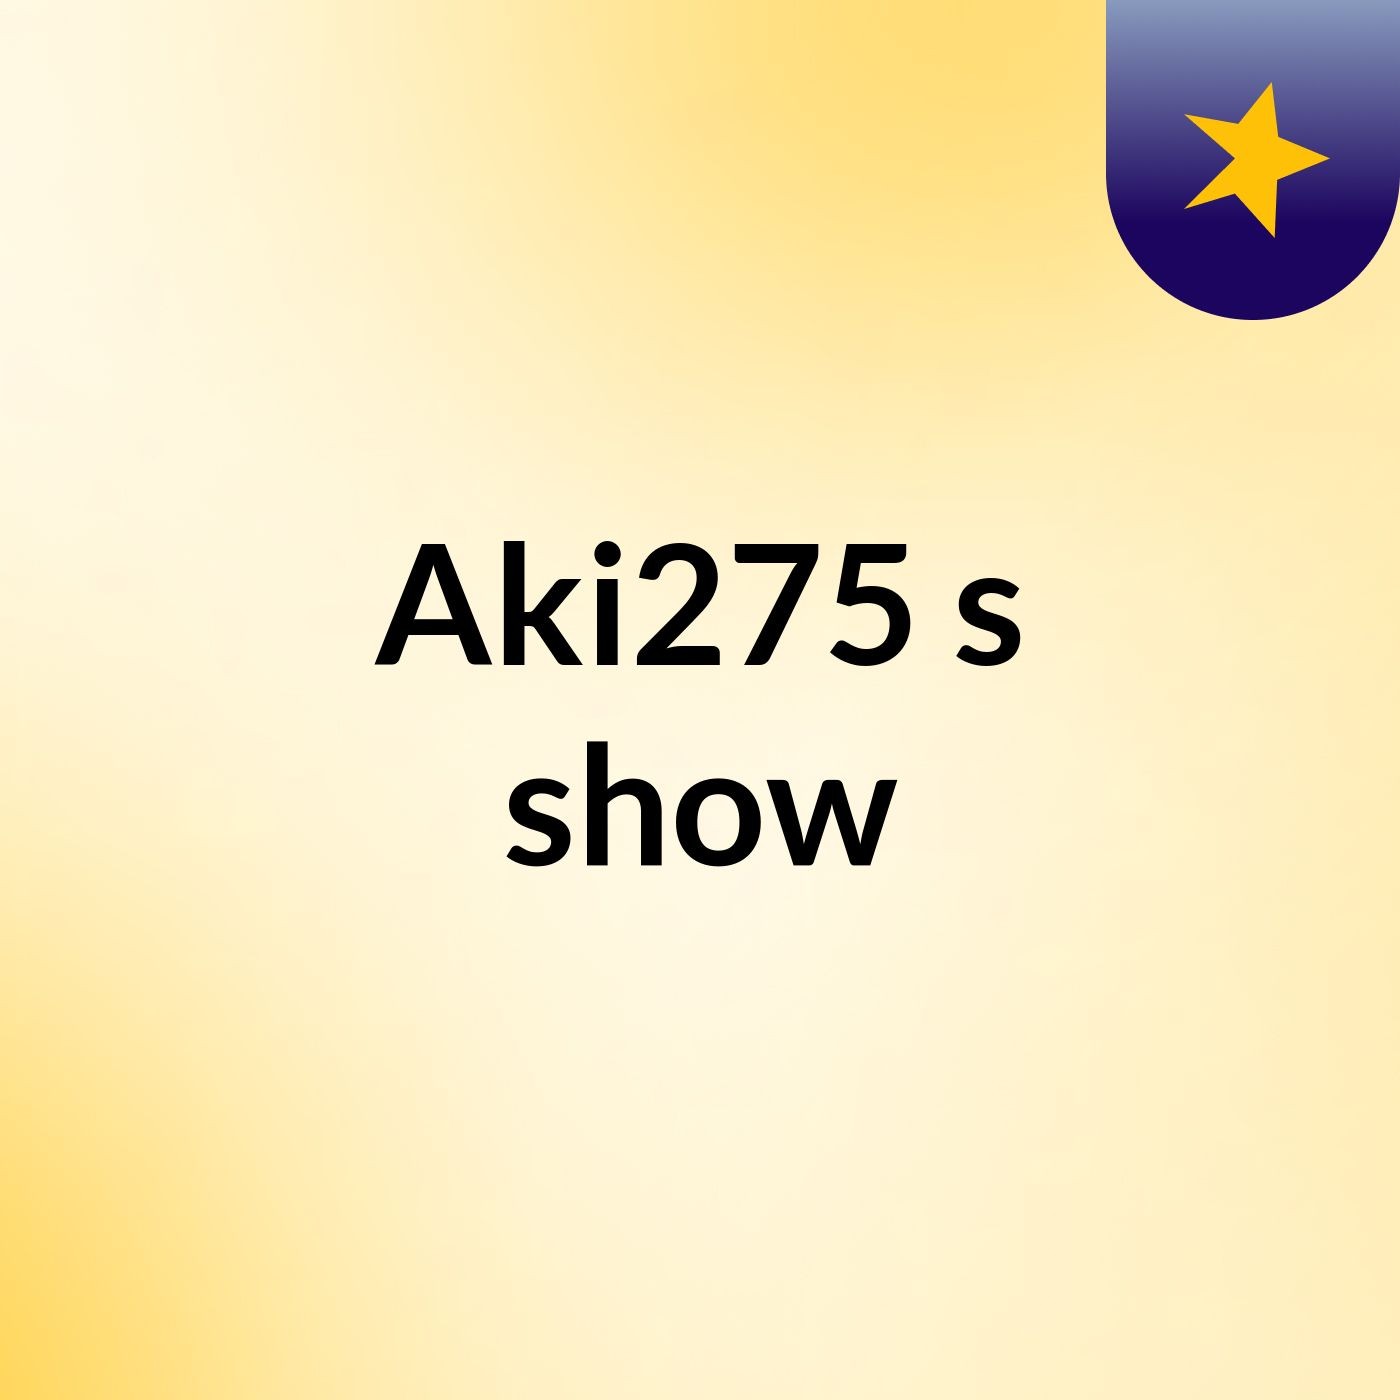 Aki275's show